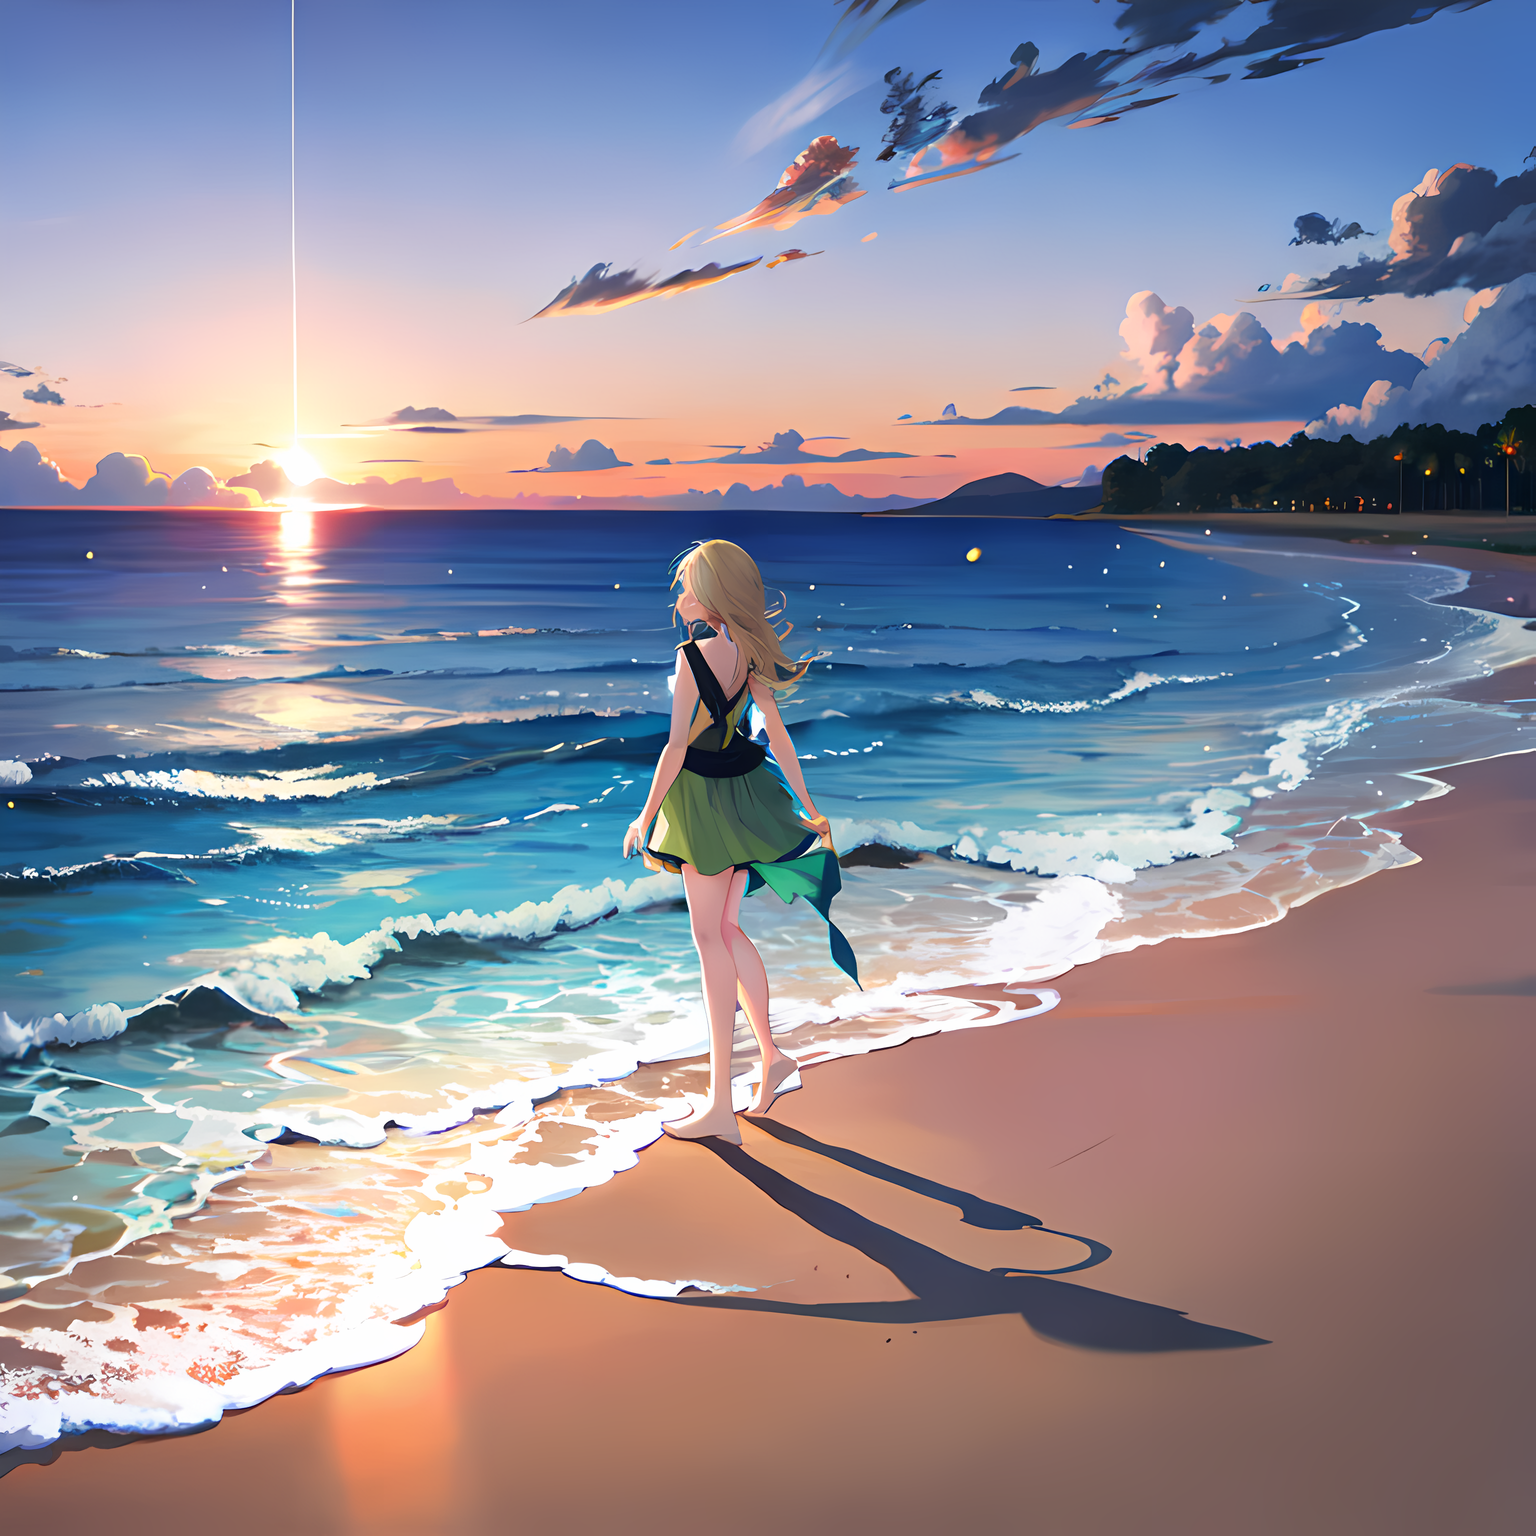 傍晚时分，少女漫步在海滩，观赏绝美海岸景色。插画图片壁纸